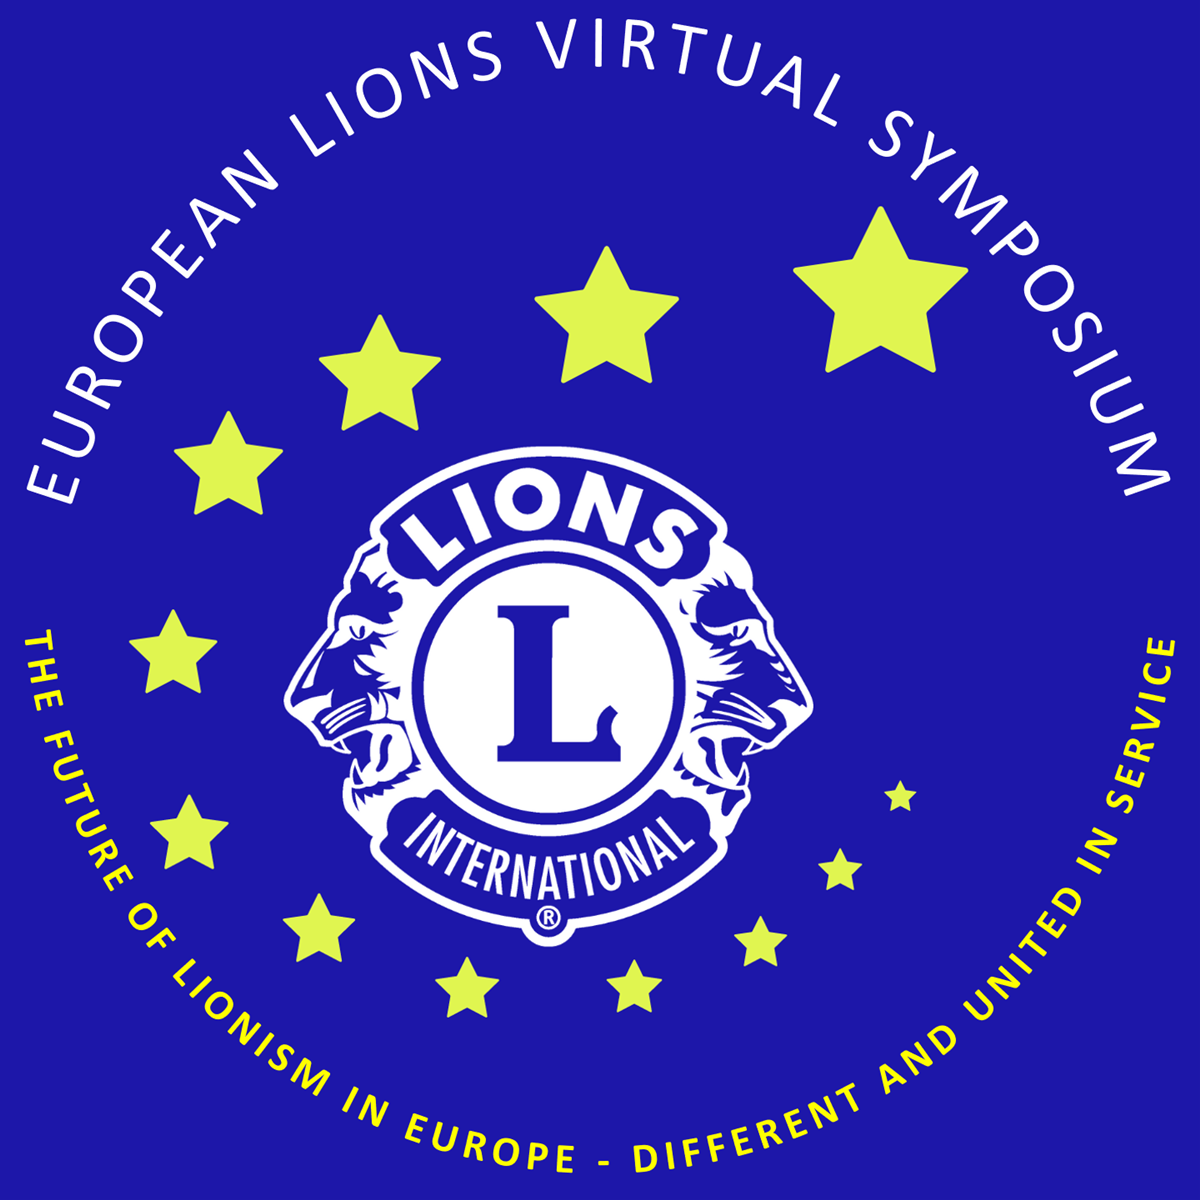 Lions Belgium European Lions Virtual Symposium 2020